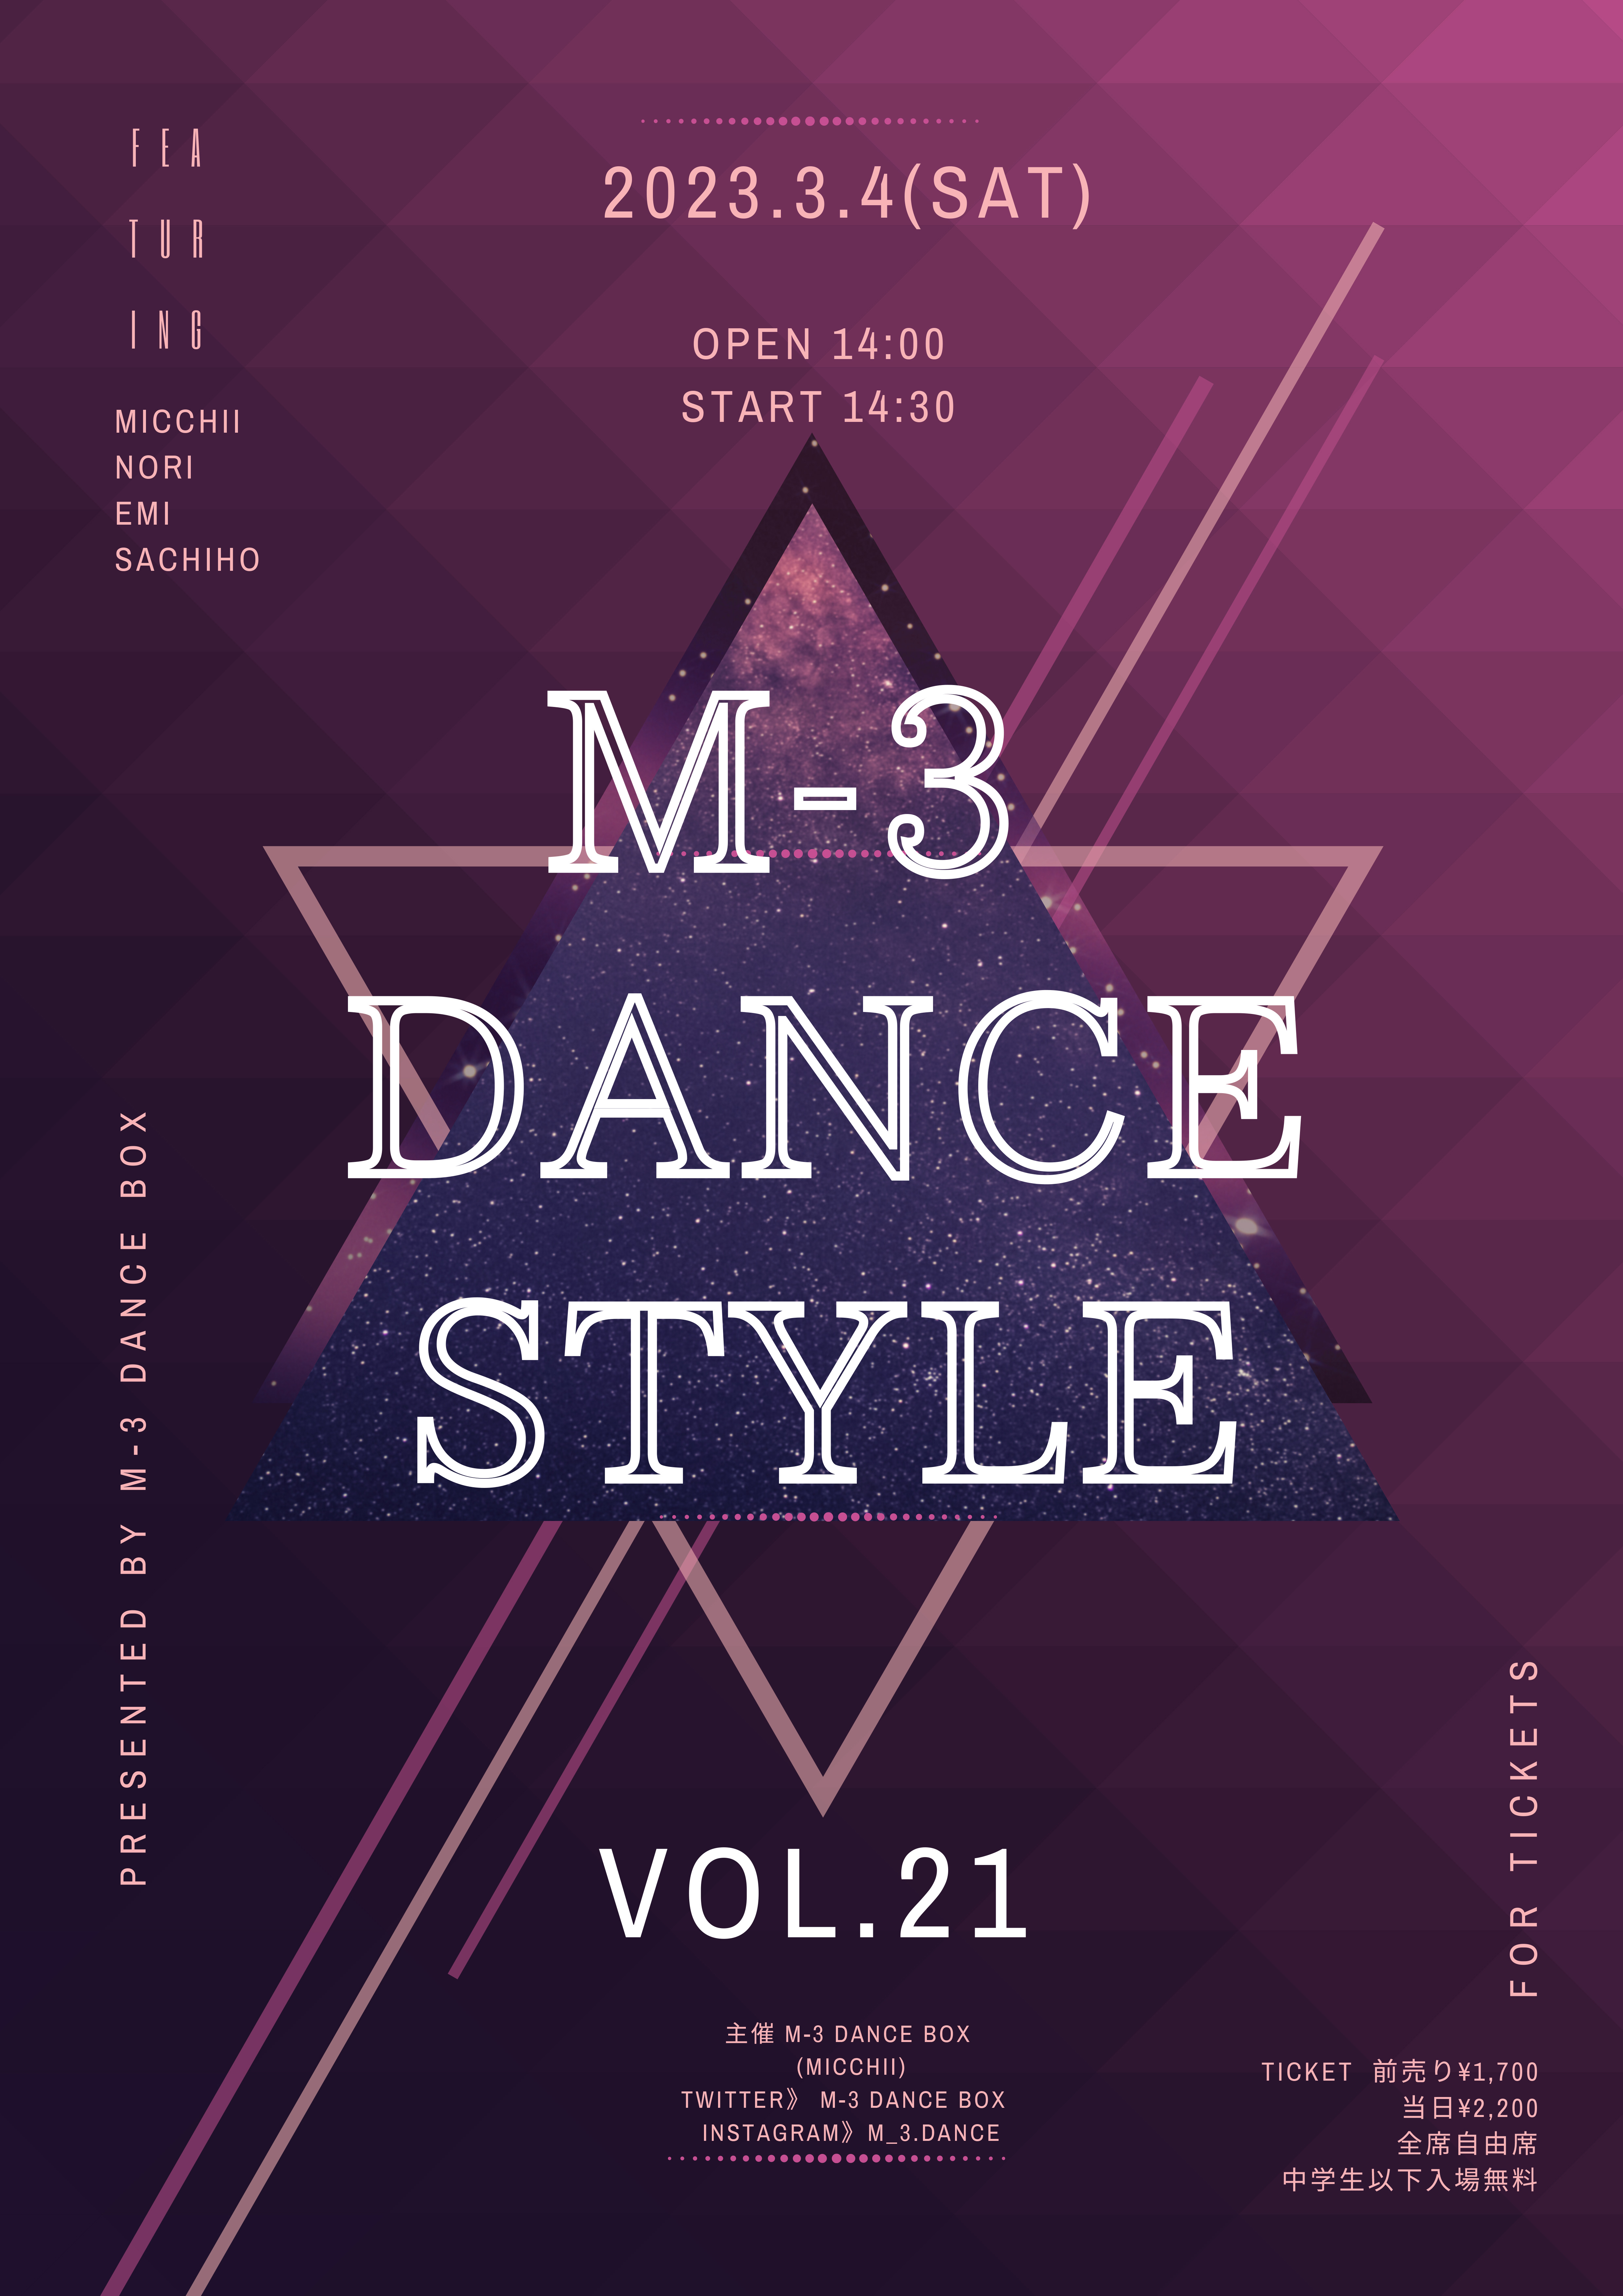 【オルビスホール情報】3/4(土)「M-3 DANCE STYLE vol.21」開催のお知らせ